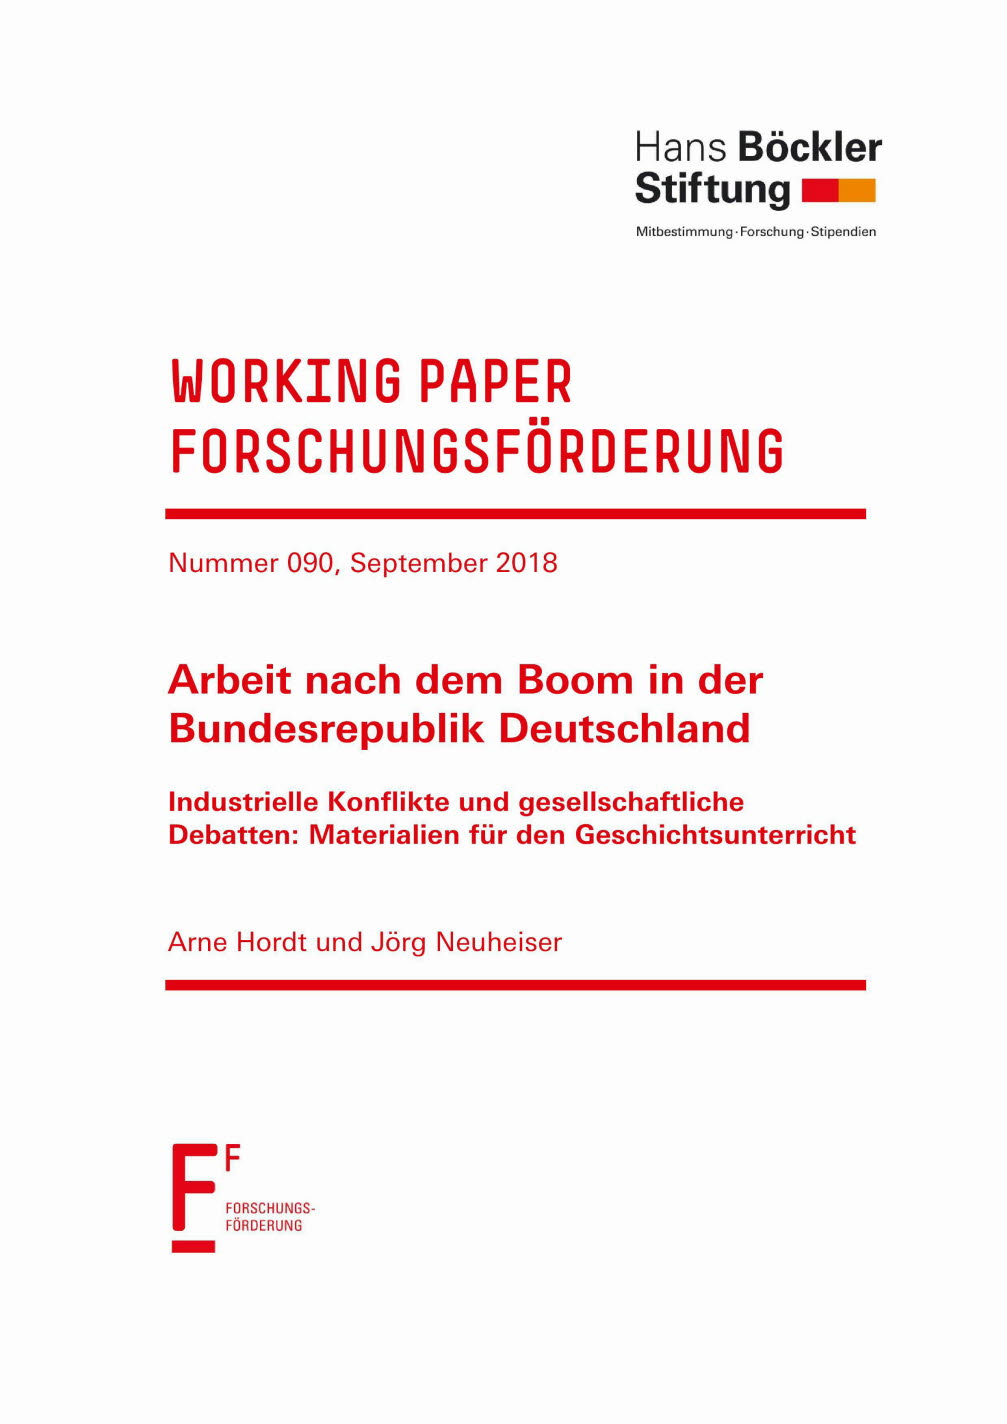 Arbeit nach dem Boom in der Bundesrepublik Deutschland